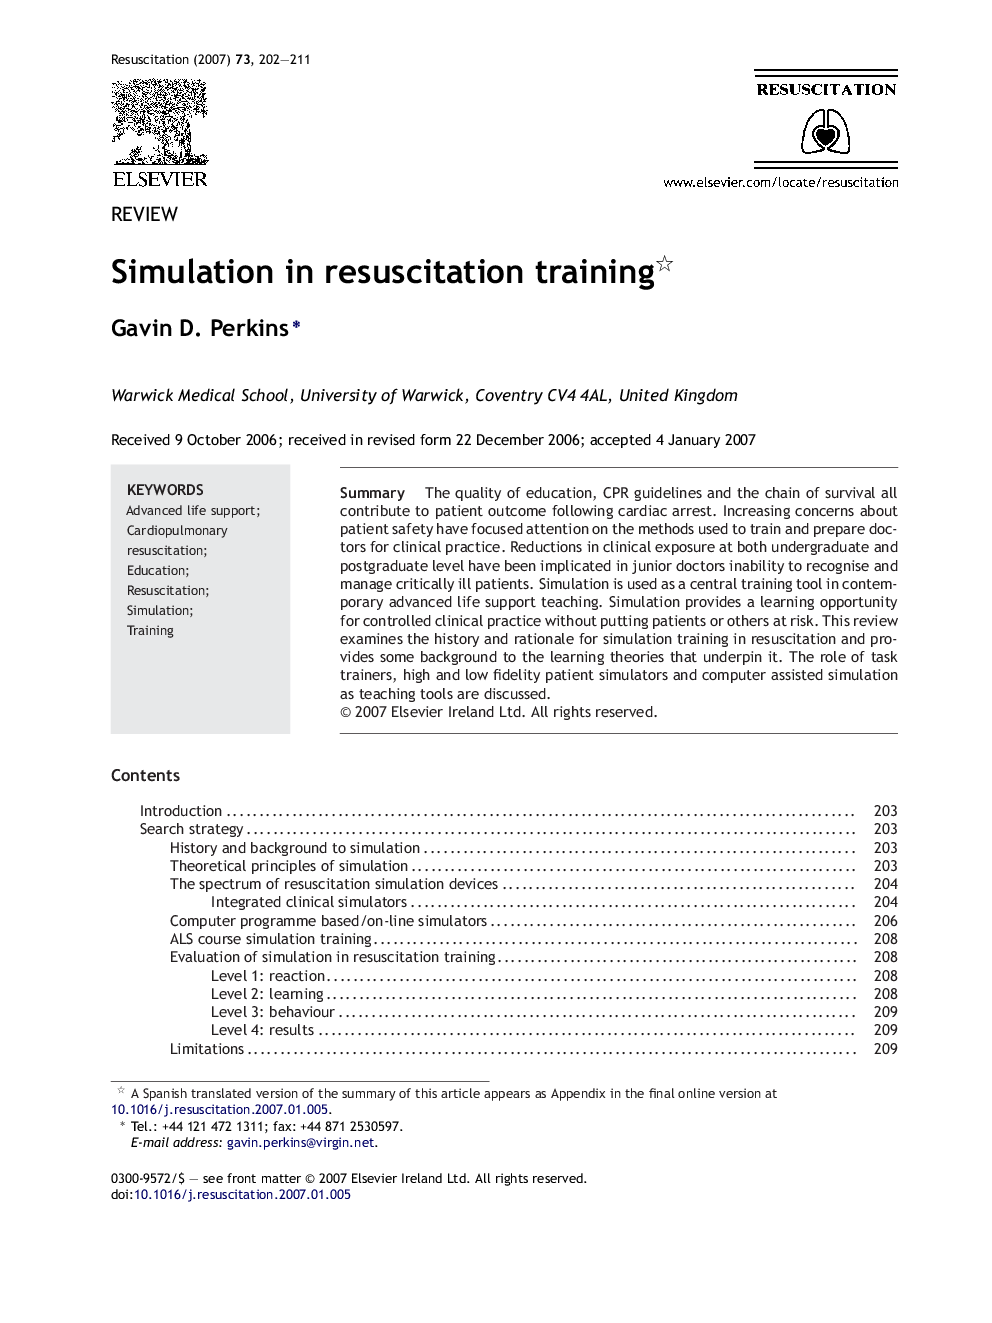 Simulation in resuscitation training 